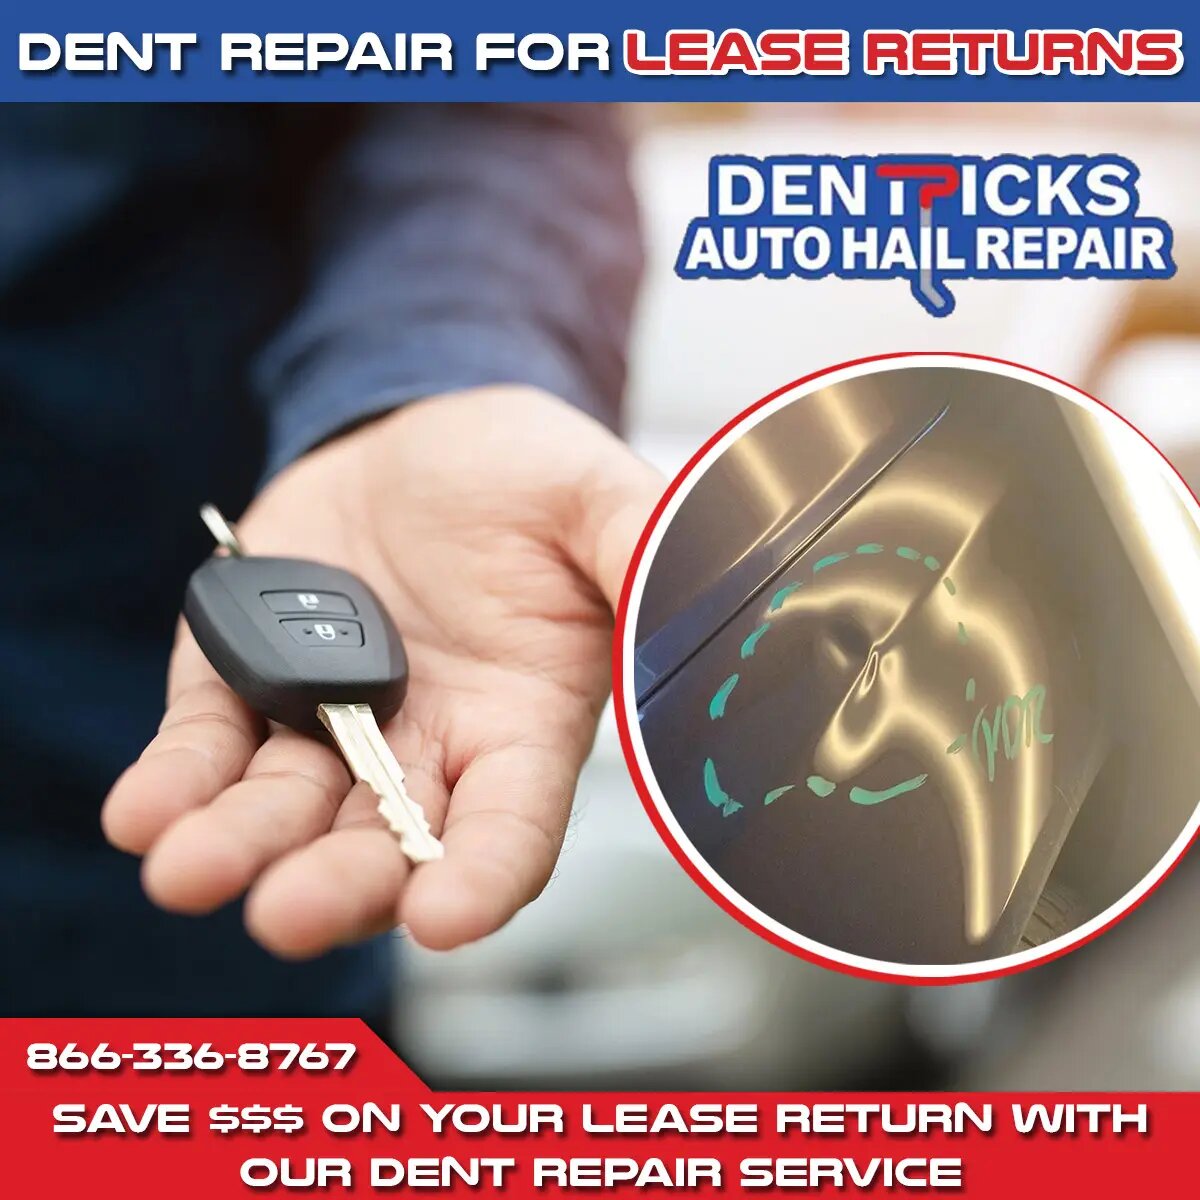 Dent Repair for lease returns